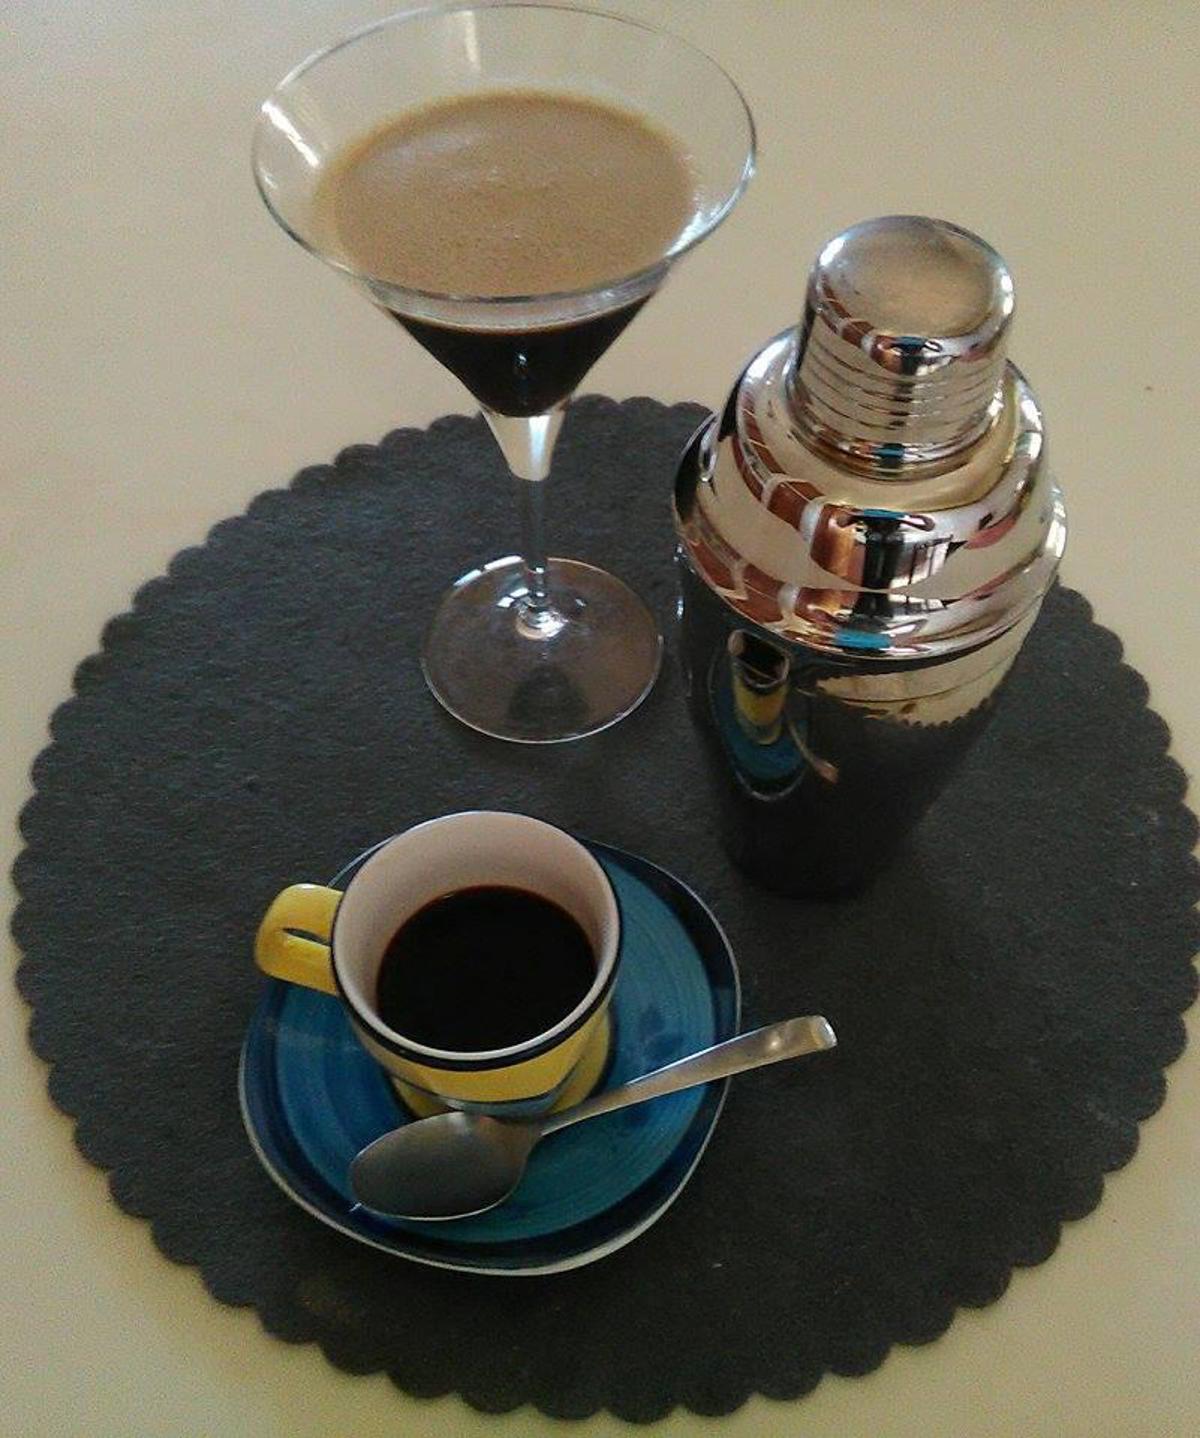 sul tavolo uno shaker una tazzina di caffè e una coppa per martini con il risultato finito